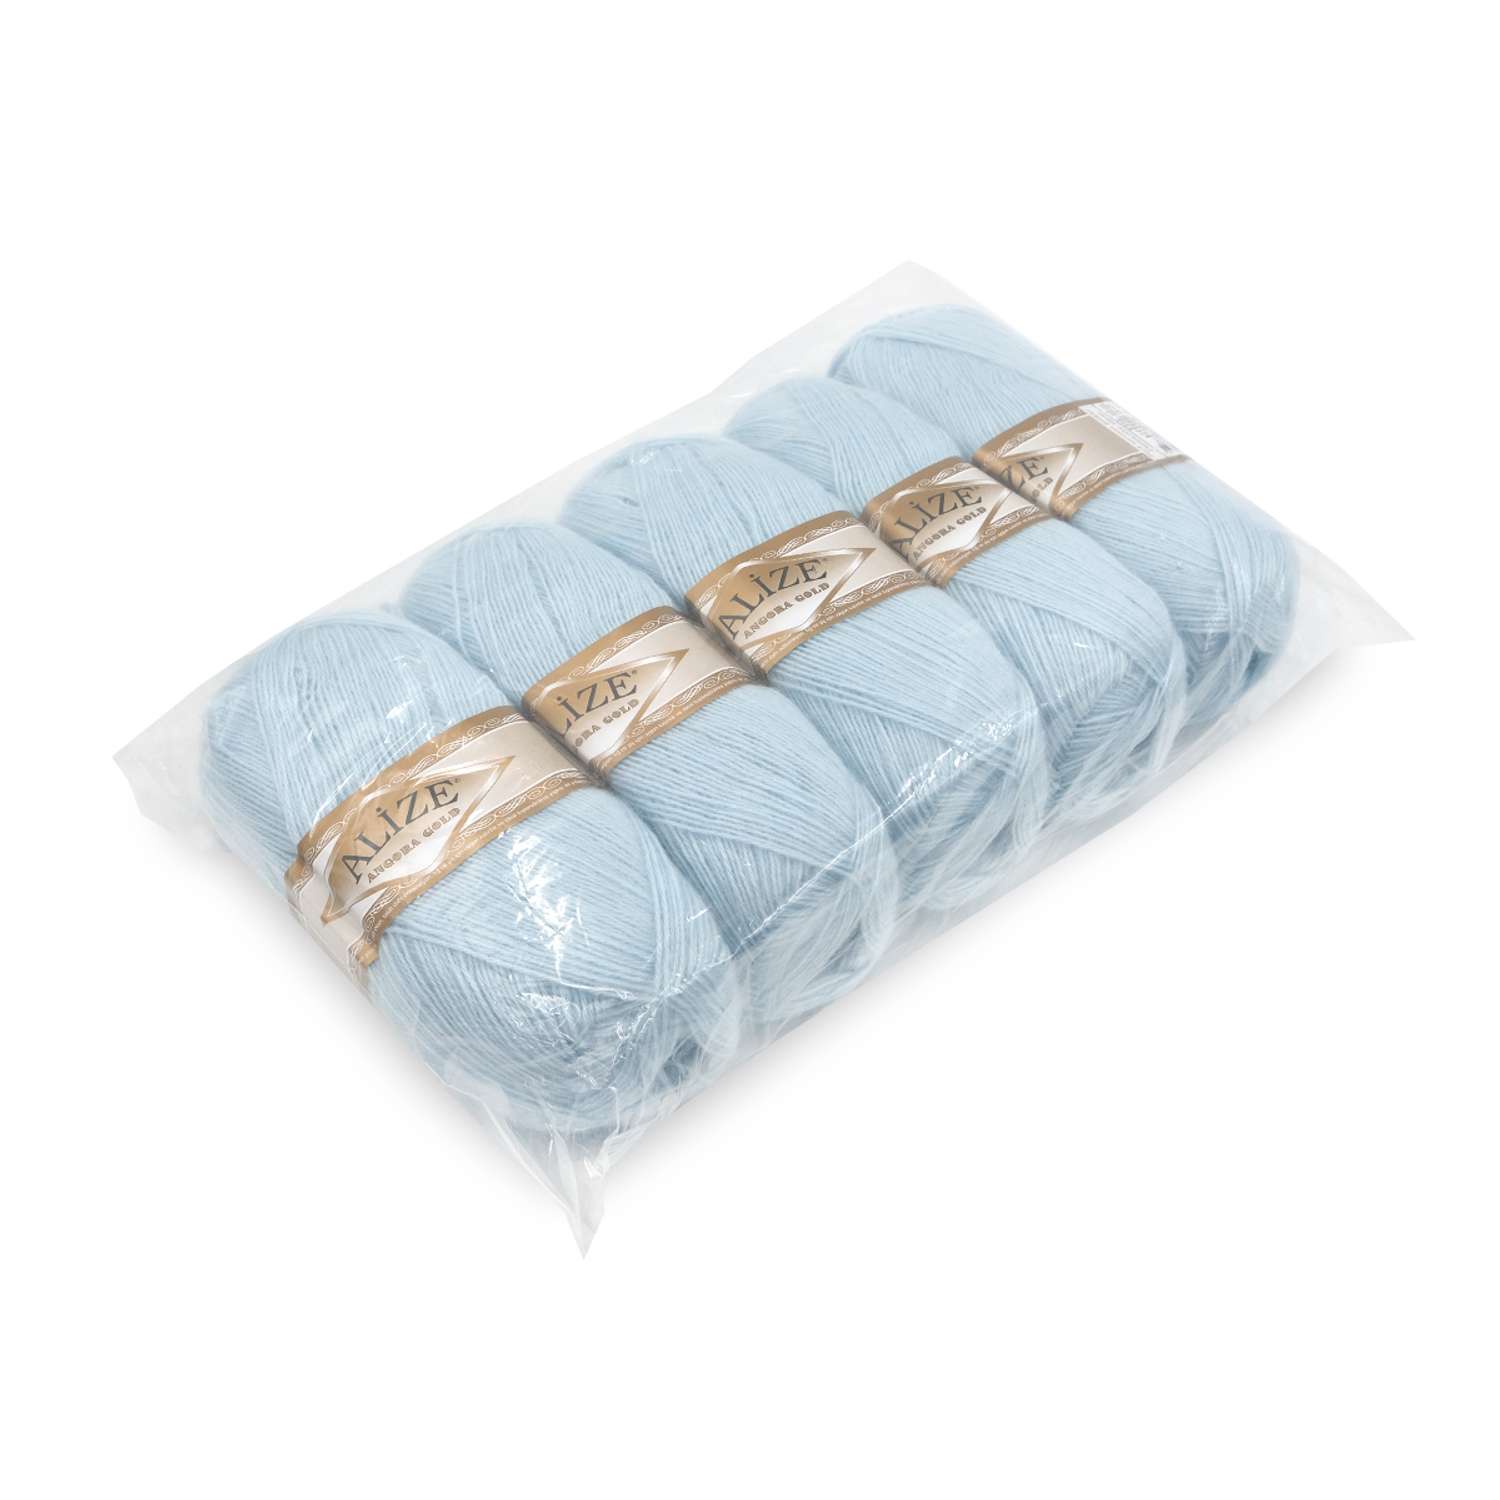 Пряжа Alize мягкая теплая для шарфов кардиганов Angora Gold 100 гр 550 м 5 мотков 514 голубой лед - фото 8